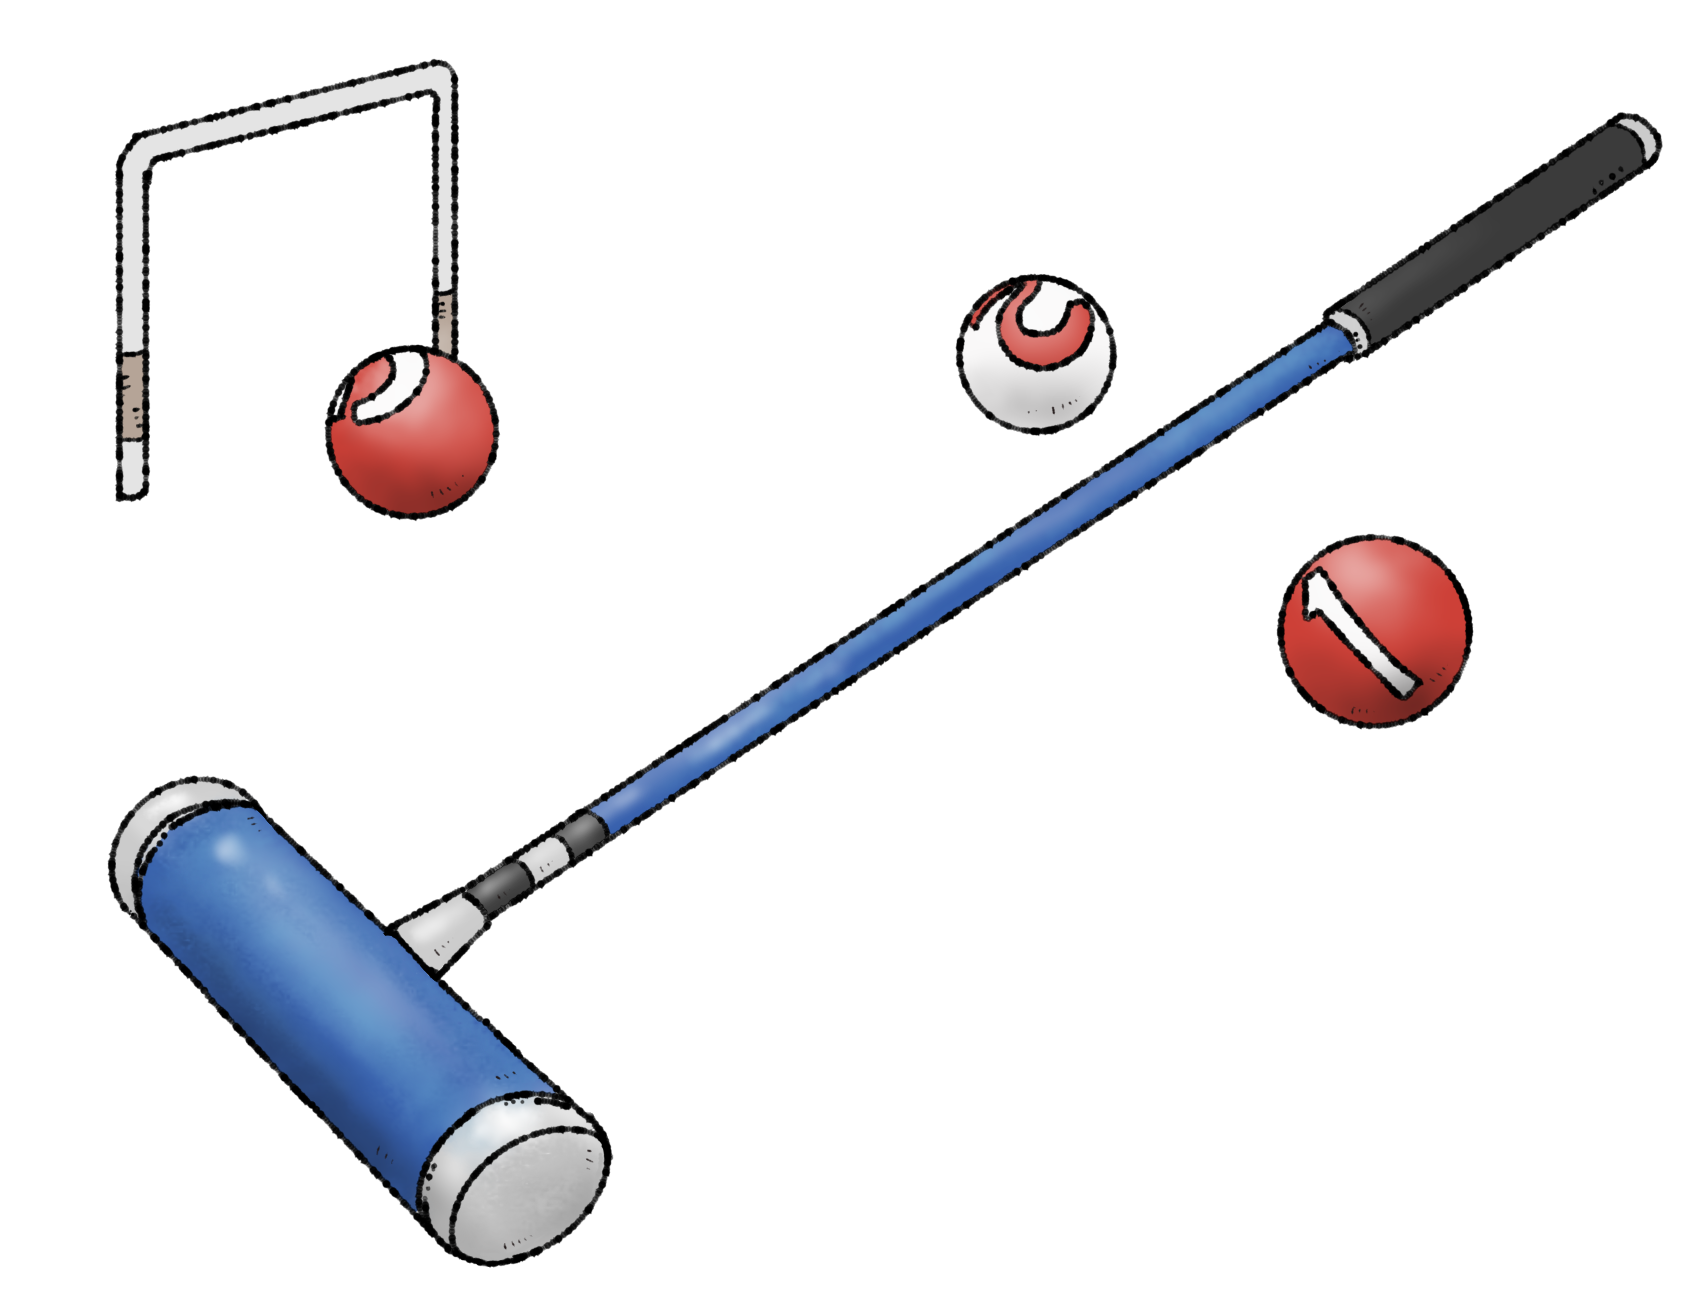 ゲートボールで使う、ゲート、ボール、スティックなどのゲートボール用品